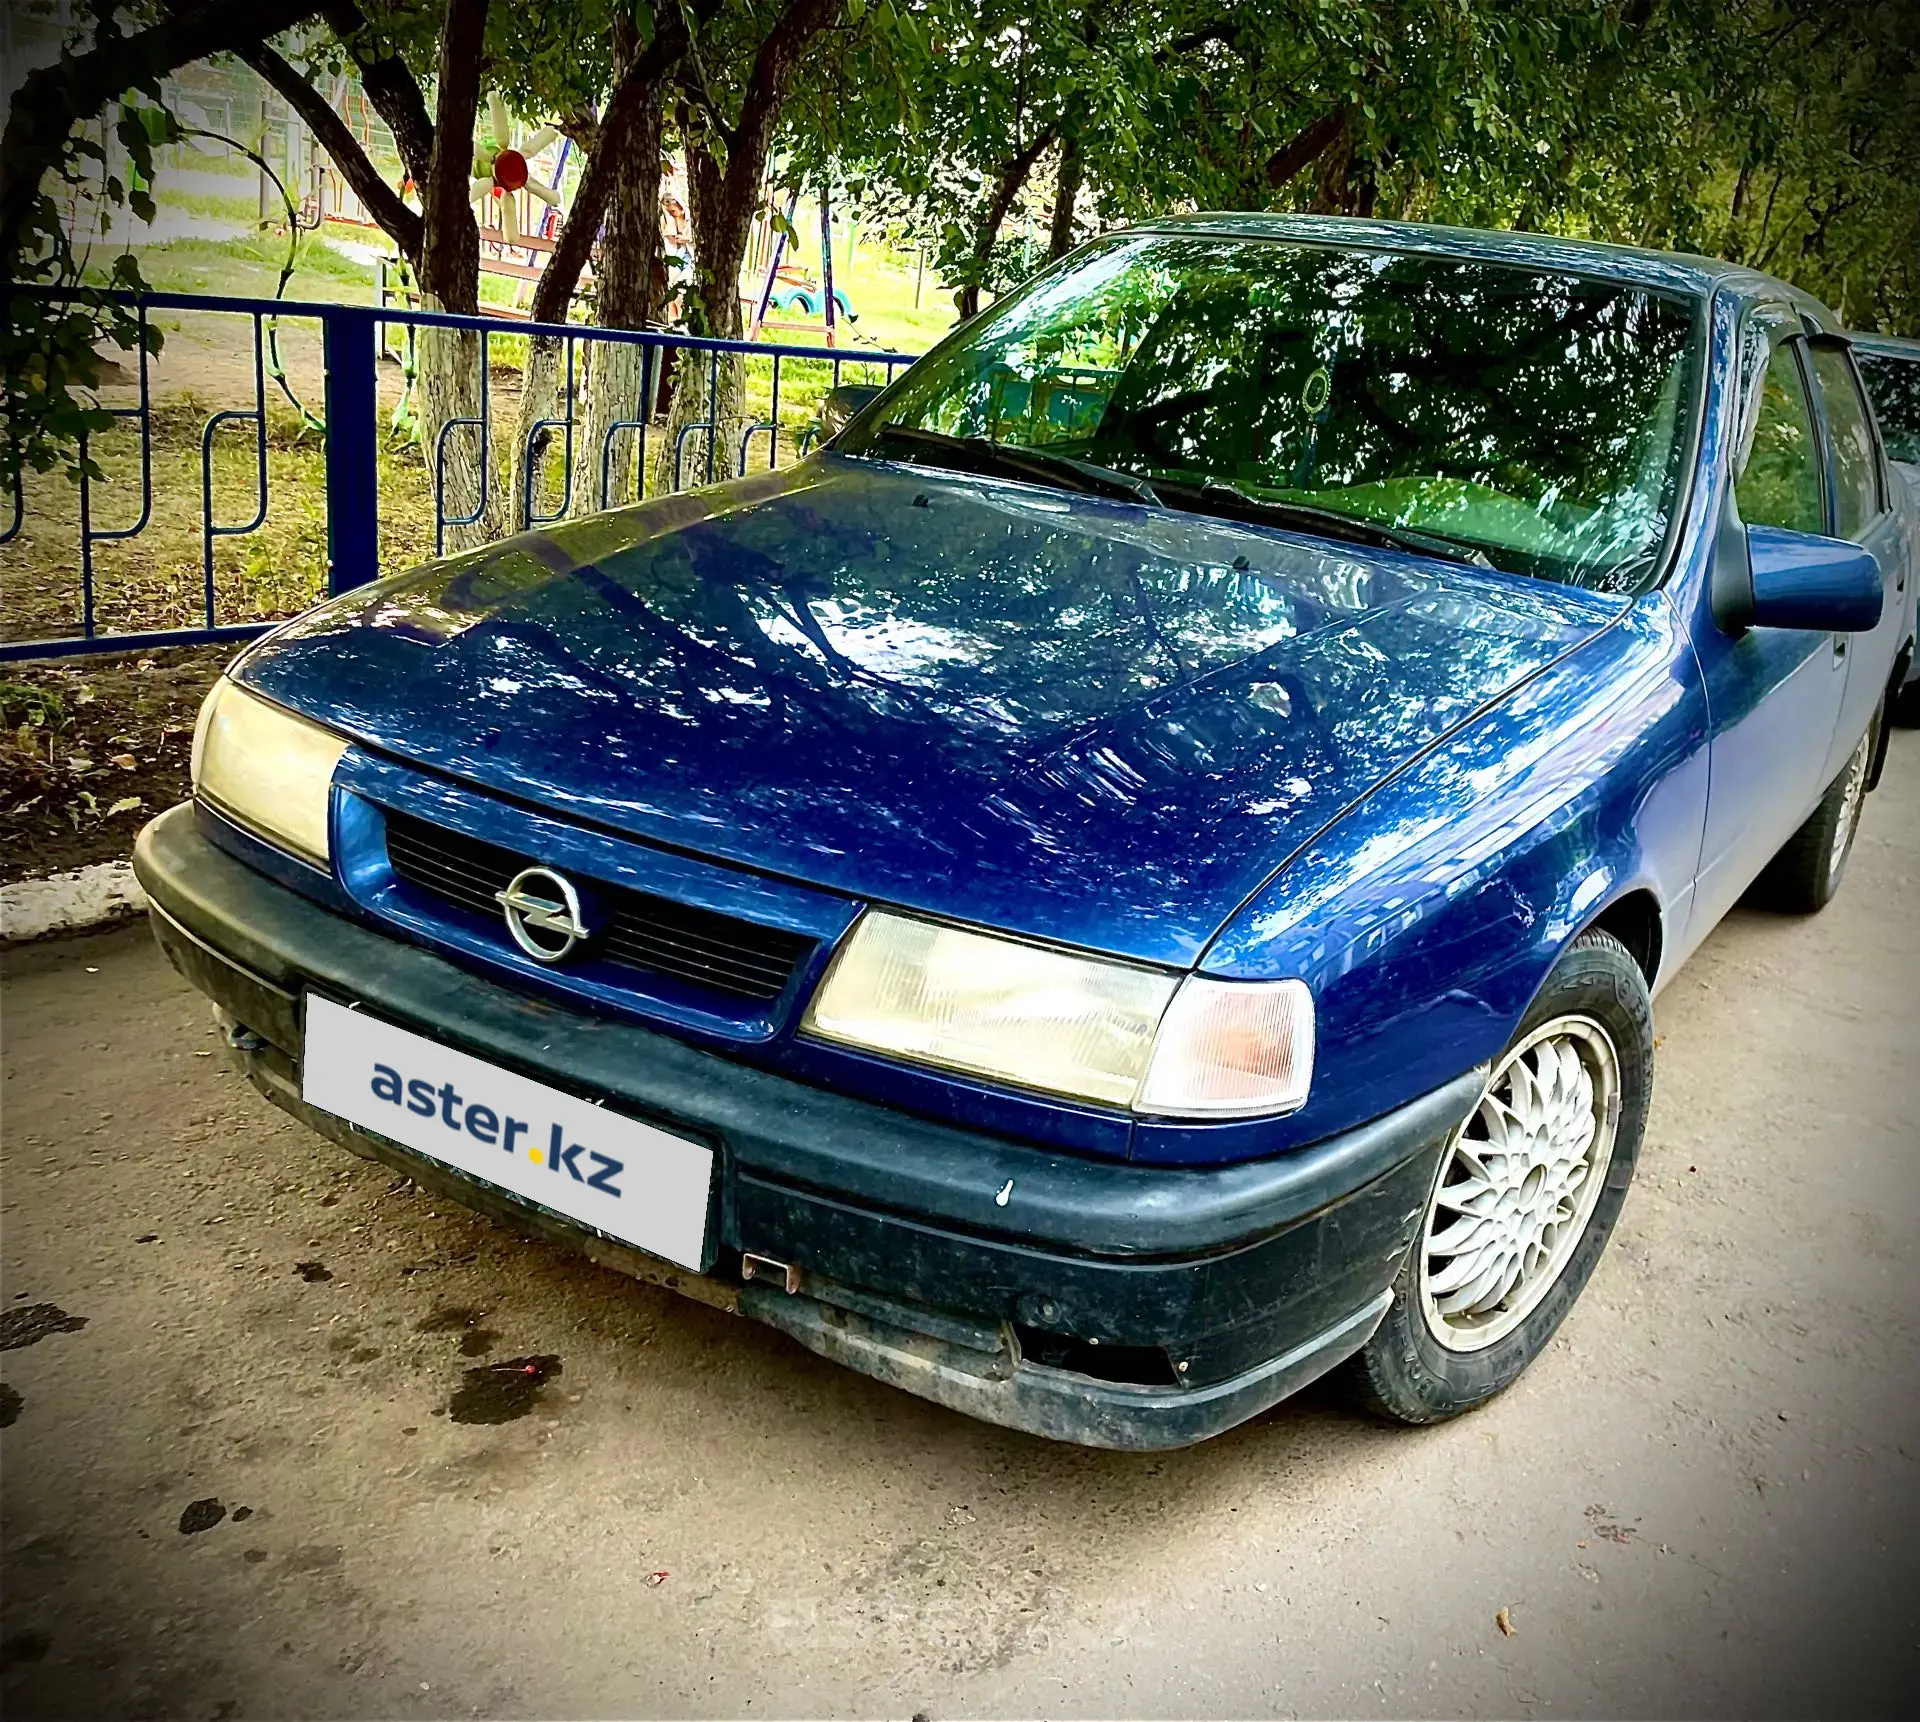 Opel Vectra 1992. Опель Вектра 1992. Опель Вектра 1992 года. Opel Vectra 1992 балка задняя.